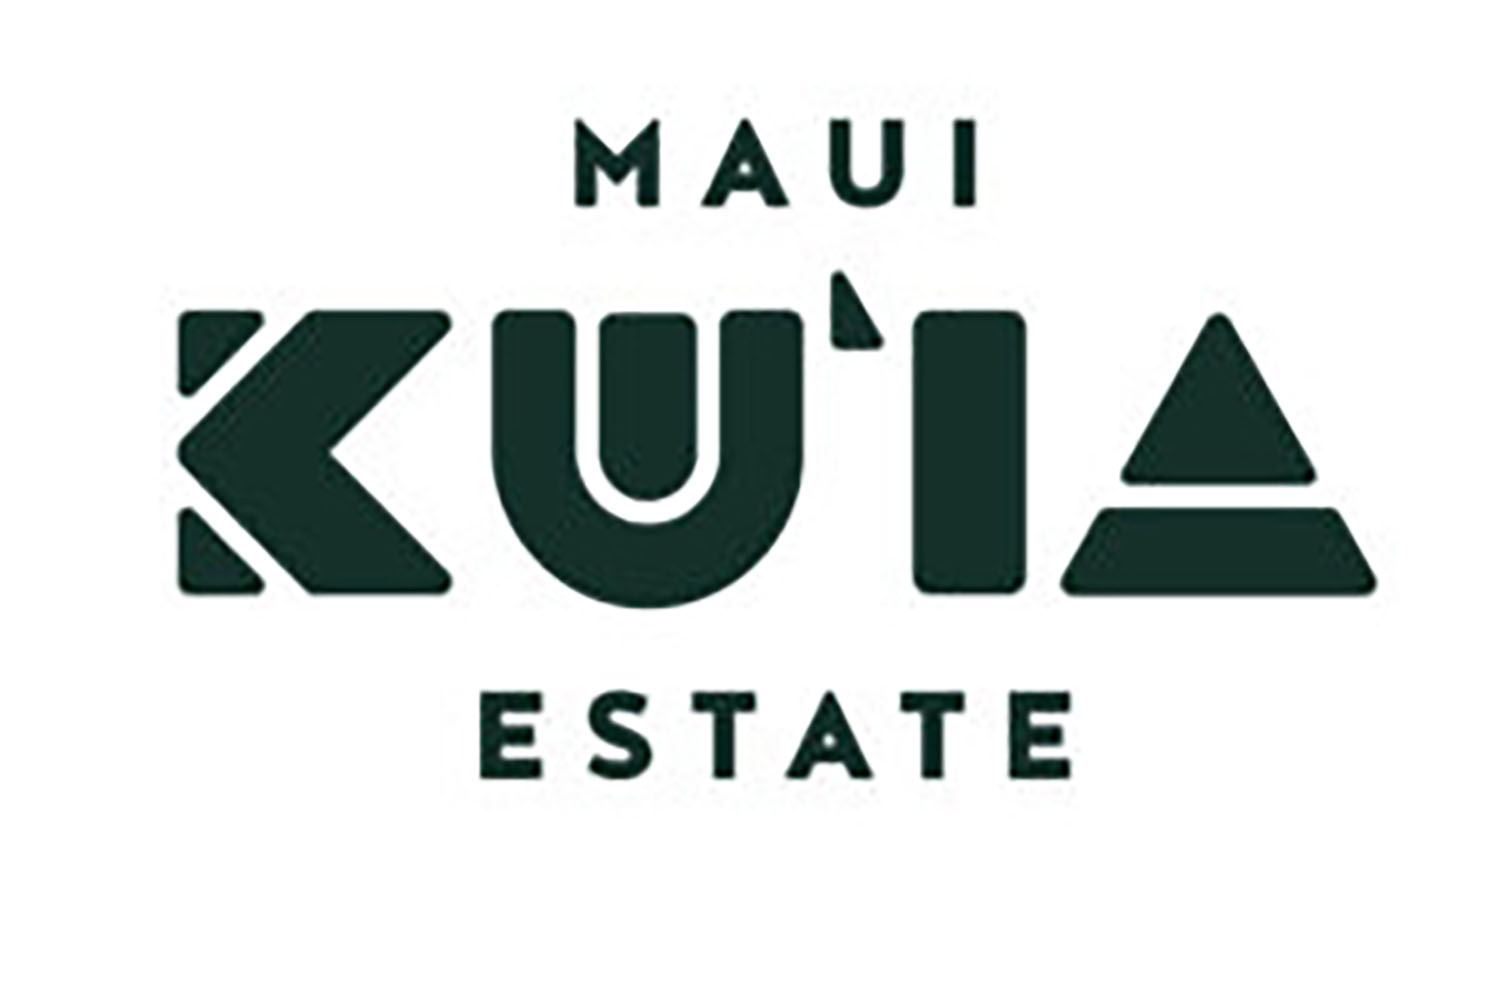 Maui gifts at Kuia Chocolate